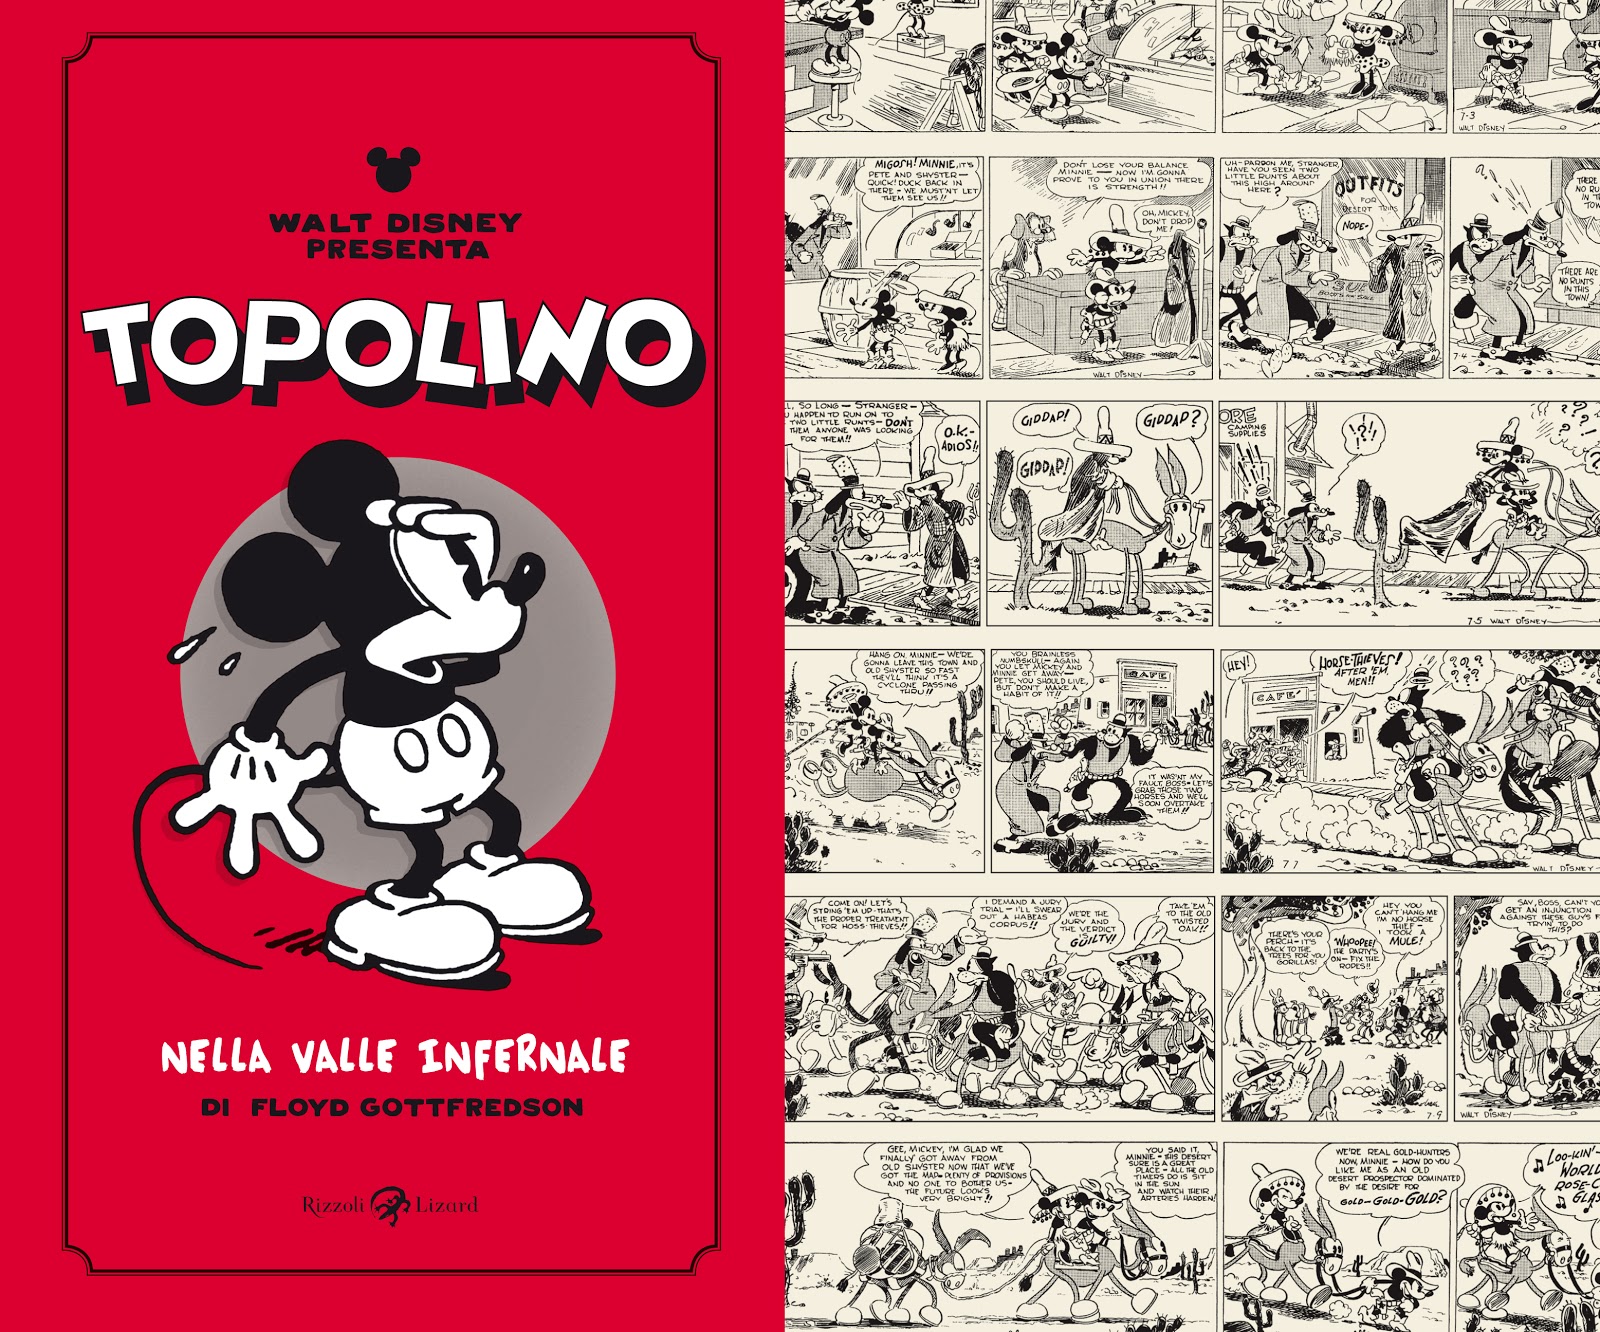 Copertina del volume Rizzoli Lizard dedicato ai primi due anni di strisce di Topolino, pubblicate tra il 1930 e il 1932.